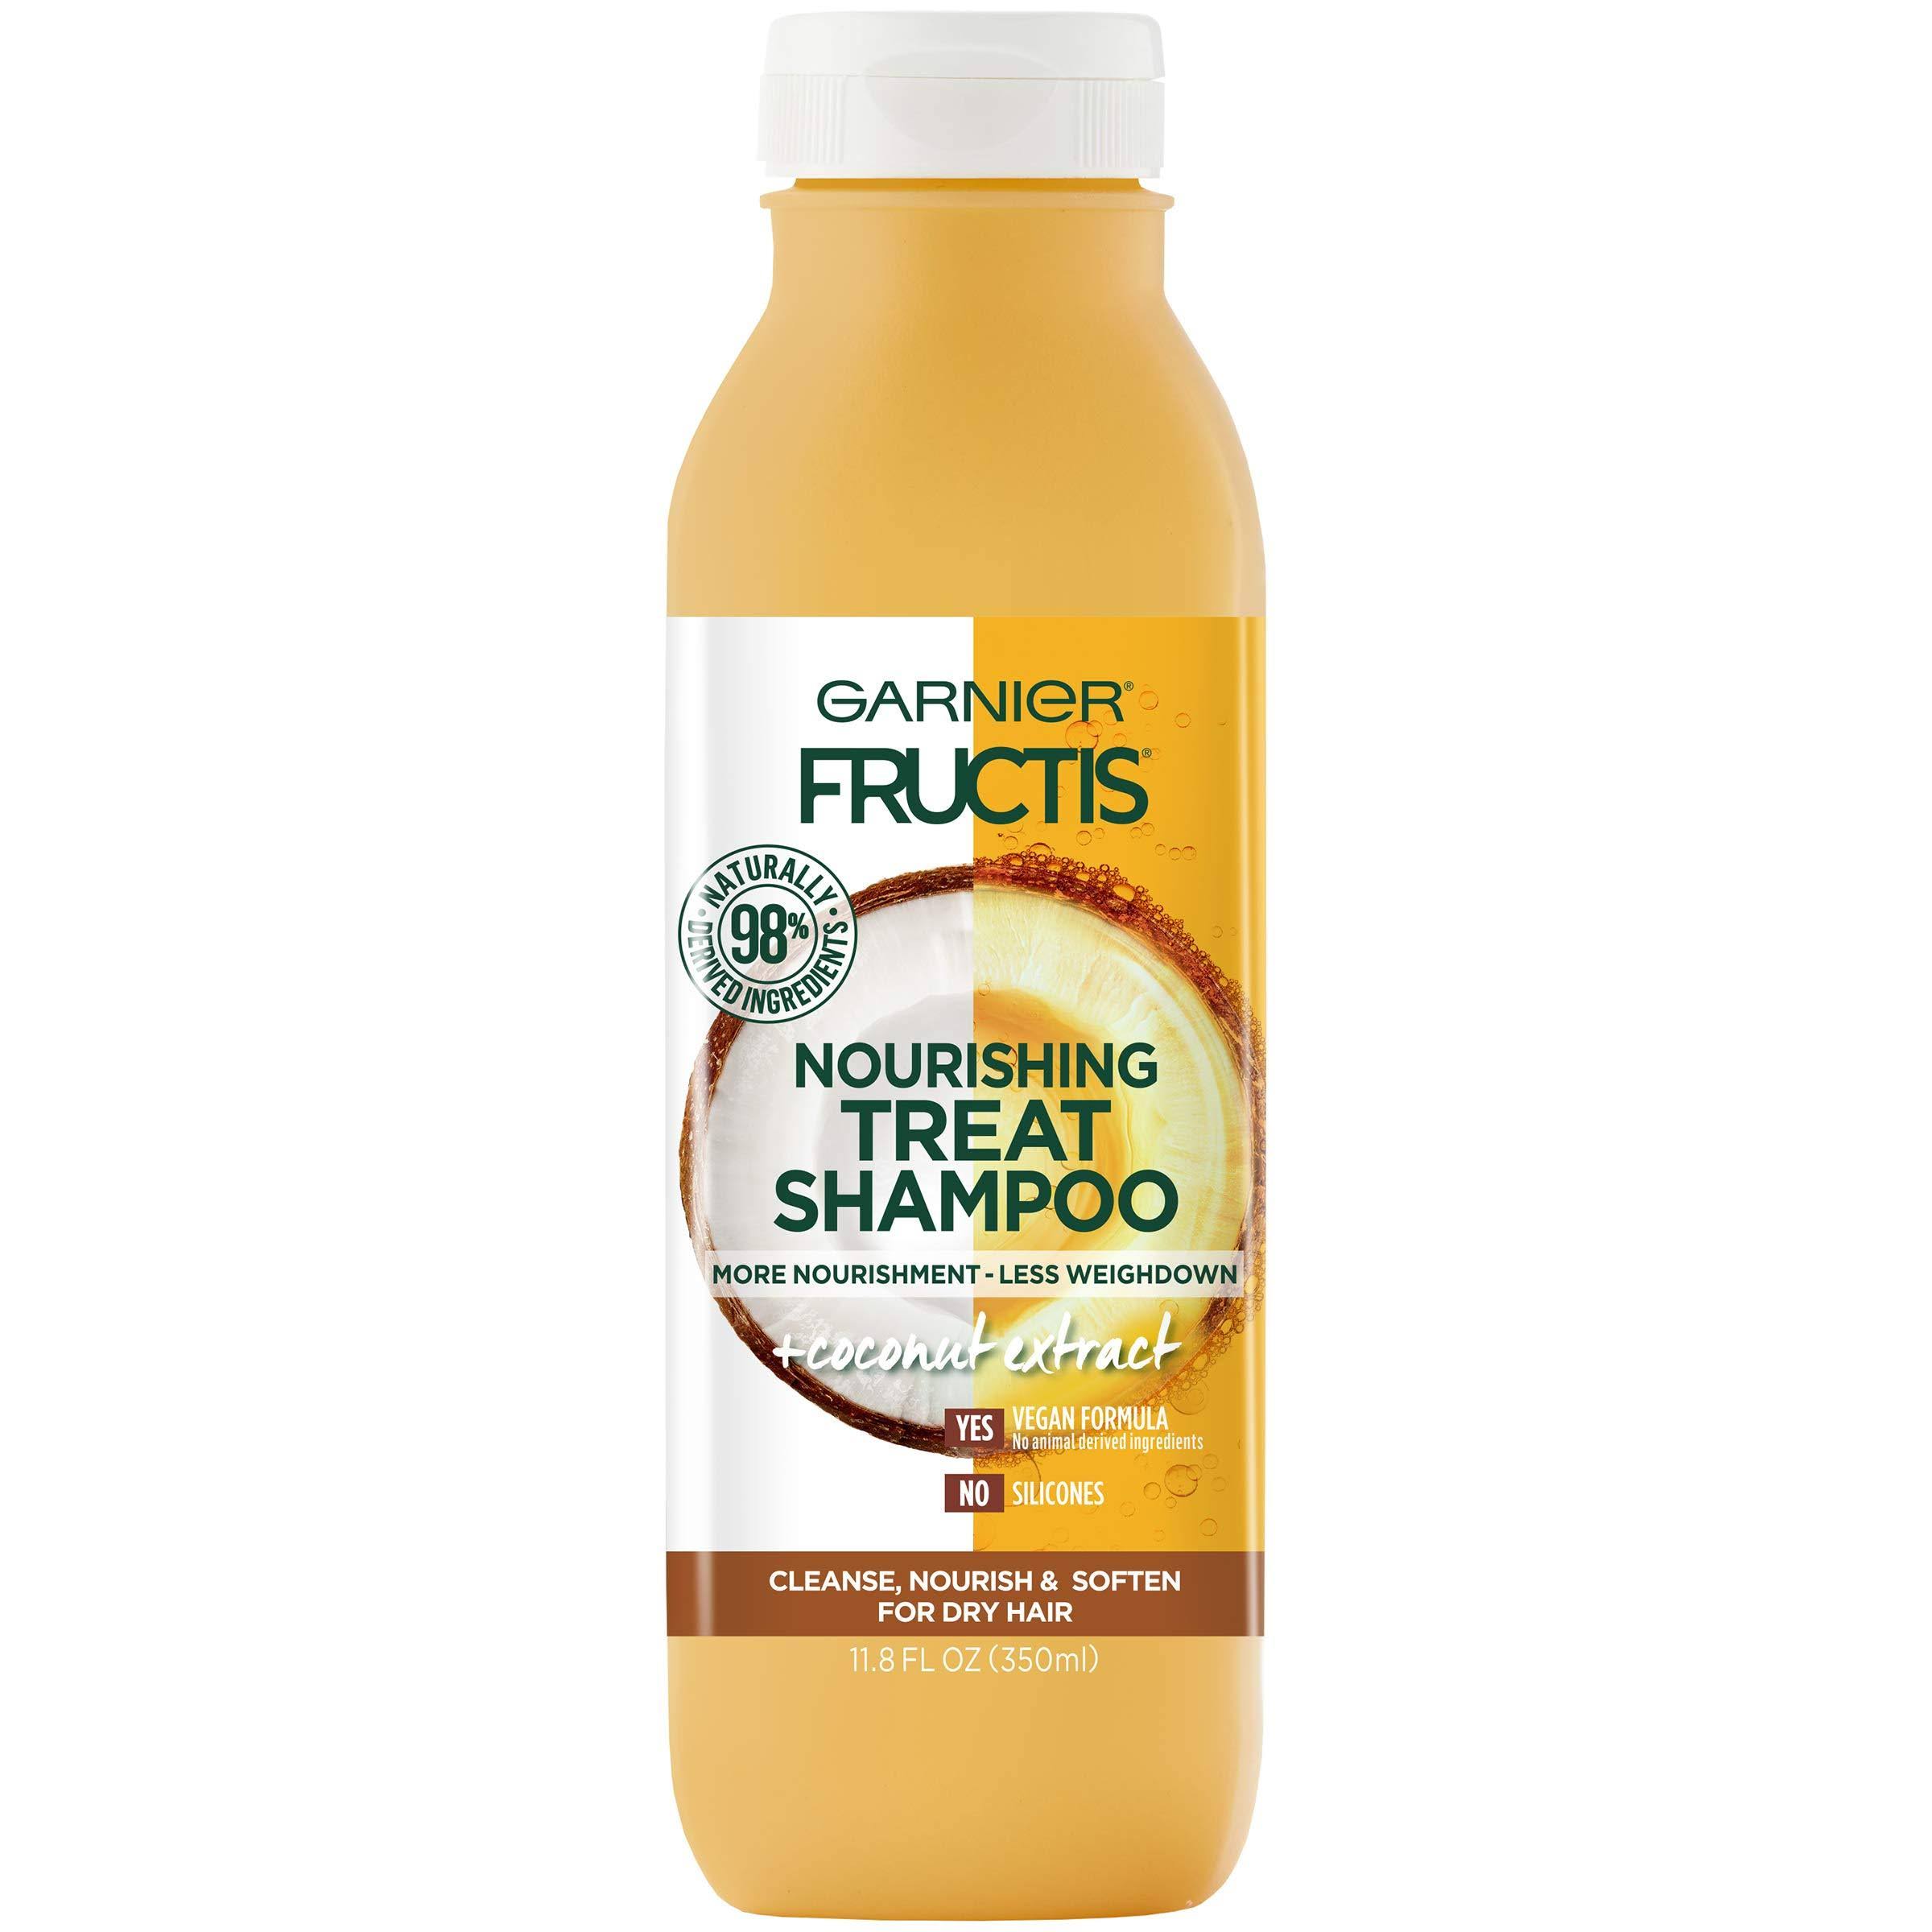 Garnier Fructis Treat Shampoo, Nourishing, Coconut Extract - 11.8 fl oz